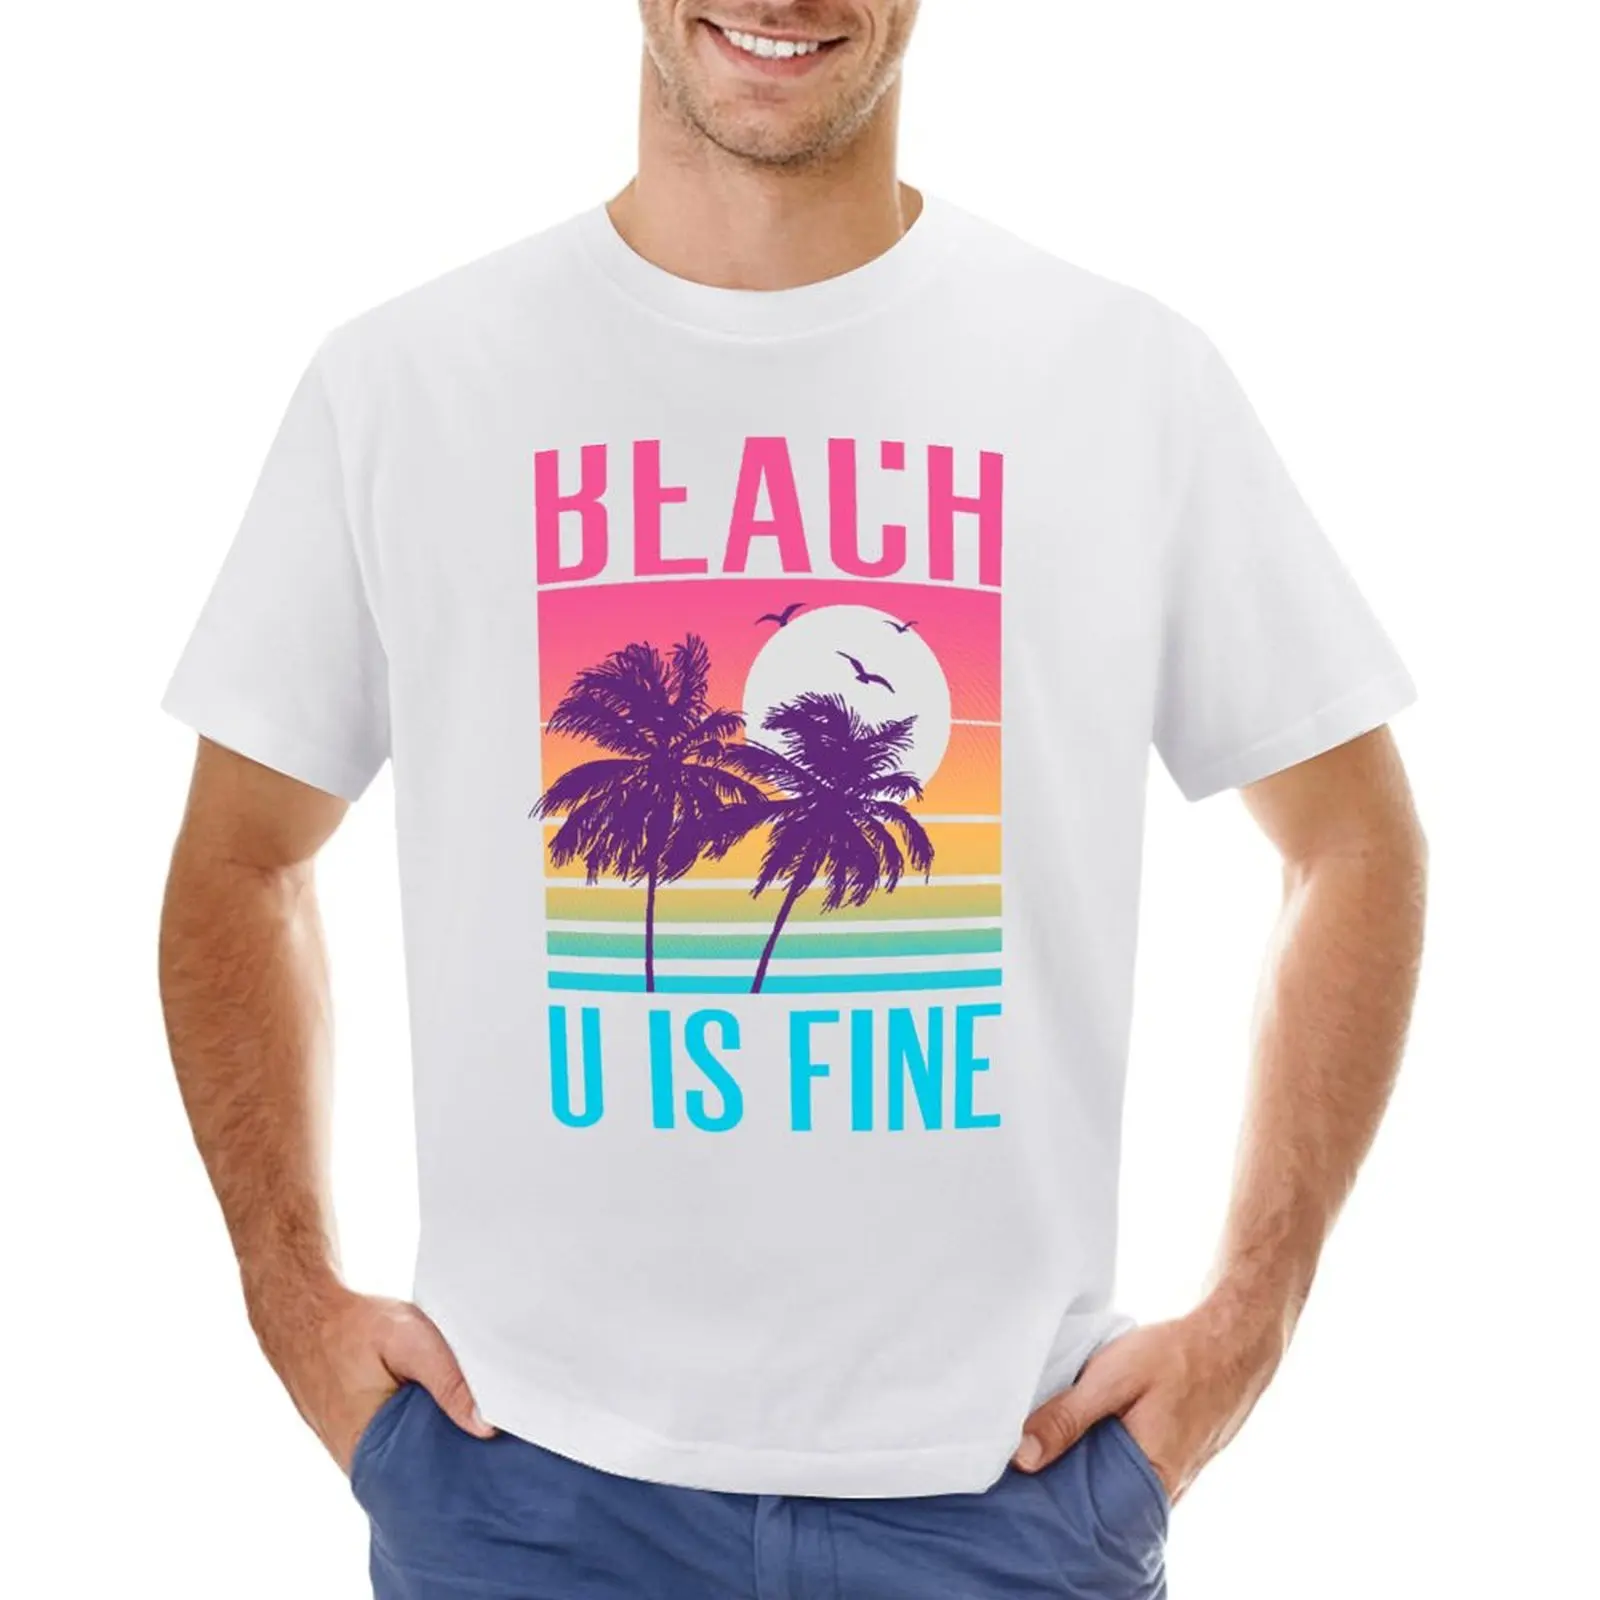 

Изящная пляжная футболка U Is Fine, винтажная одежда, принты с животными для мальчиков funnys, мужские футболки с графическим рисунком в стиле хип-хоп